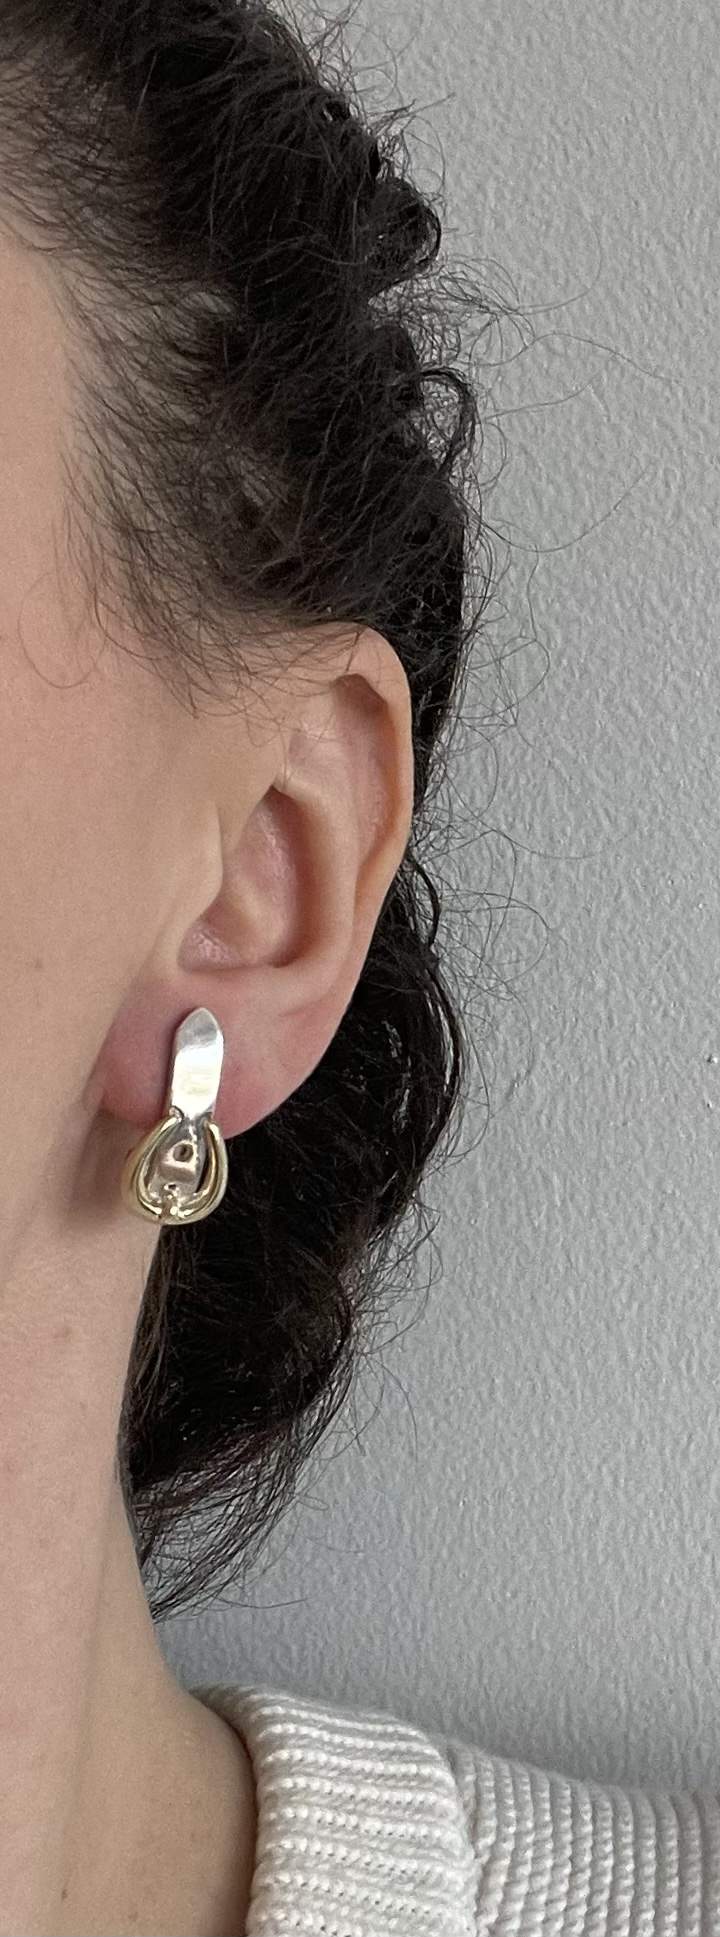 Buckle strap earrings